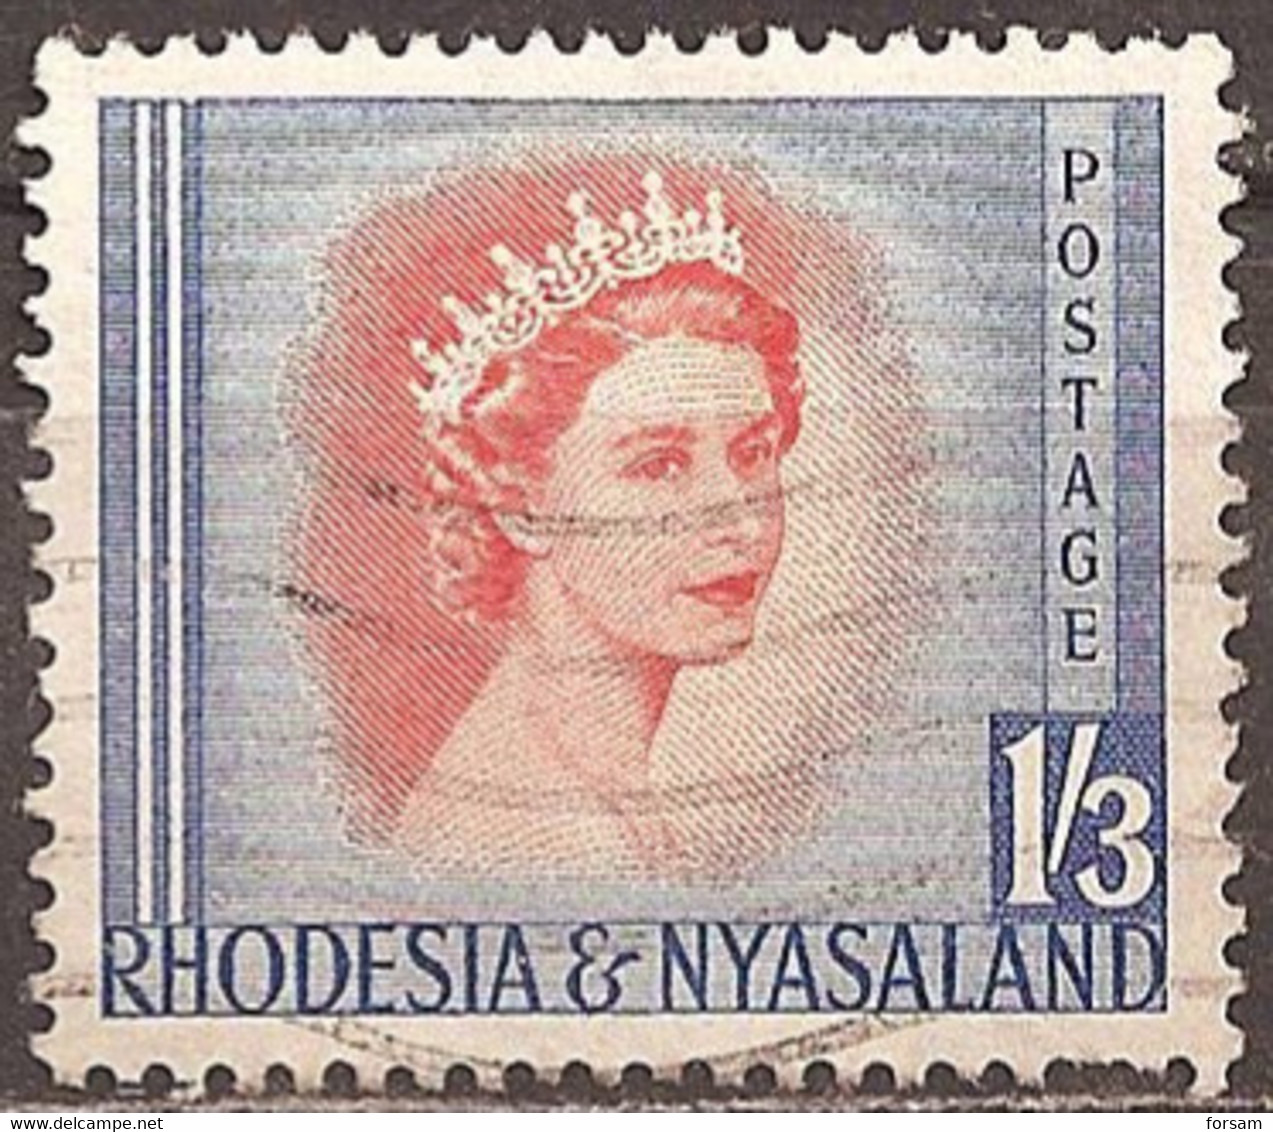 RHODESIA & NYASALAND..1954..Michel # 11...used. - Rhodesia & Nyasaland (1954-1963)